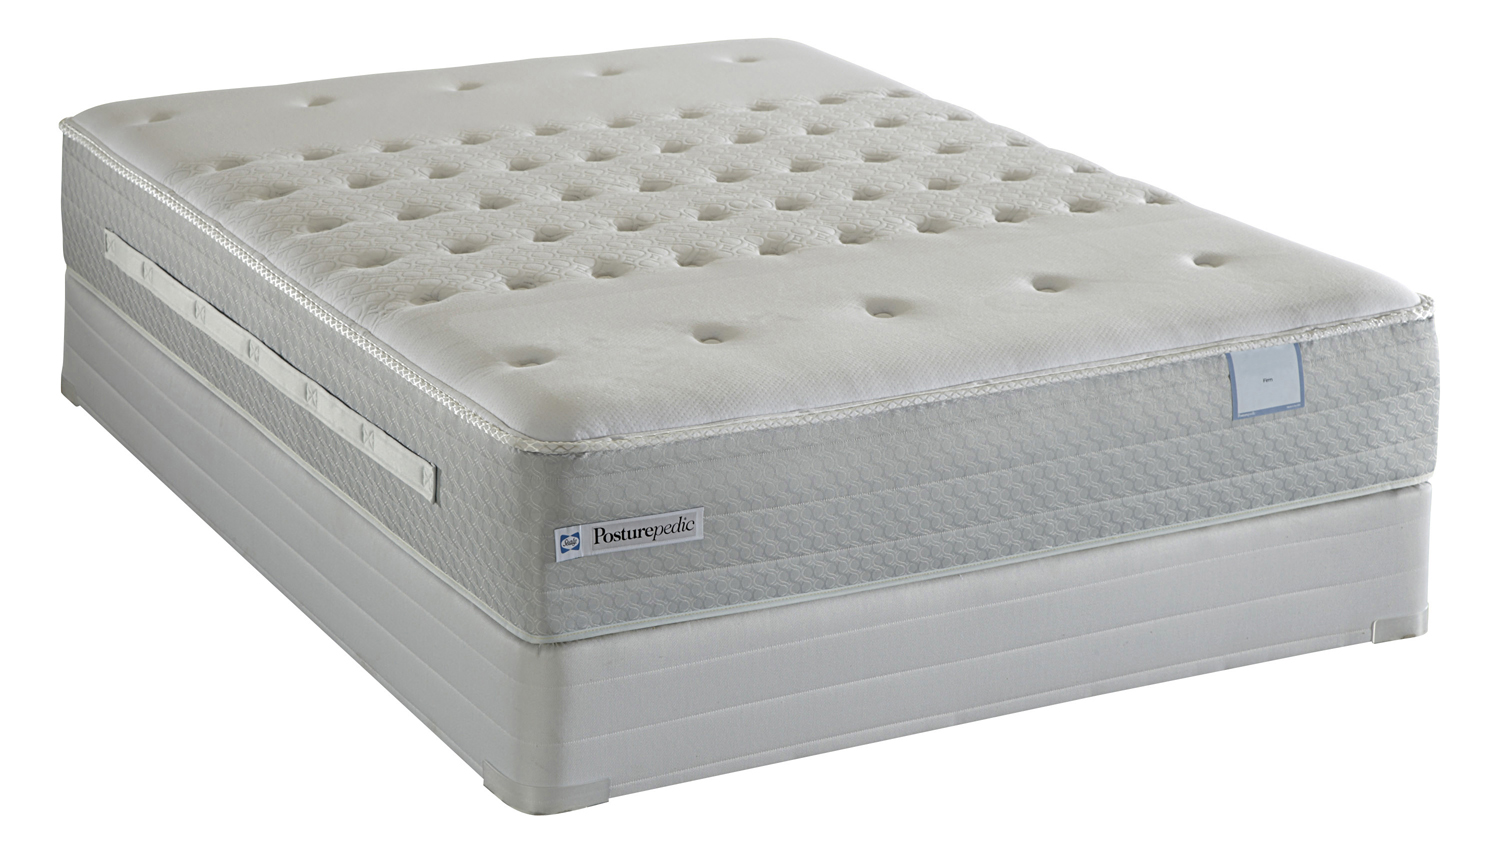 deerfield drive cushion firm mattress